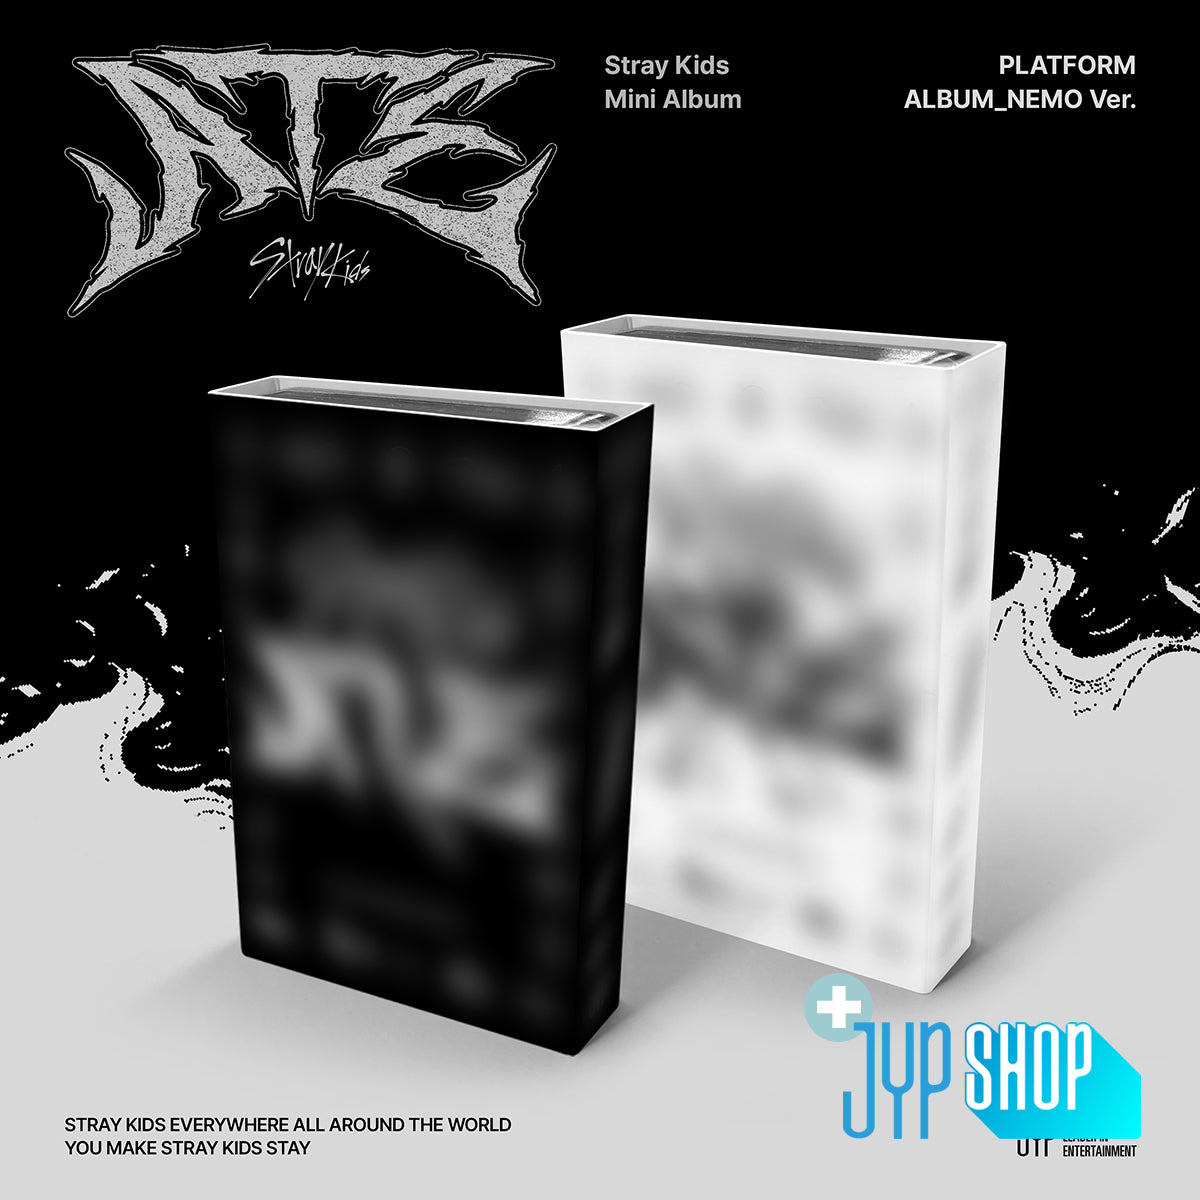 Stray Kids - ATE (Platform Album_NEMO Ver.) + JYP SHOP P.O.B [PRE-ORDER]